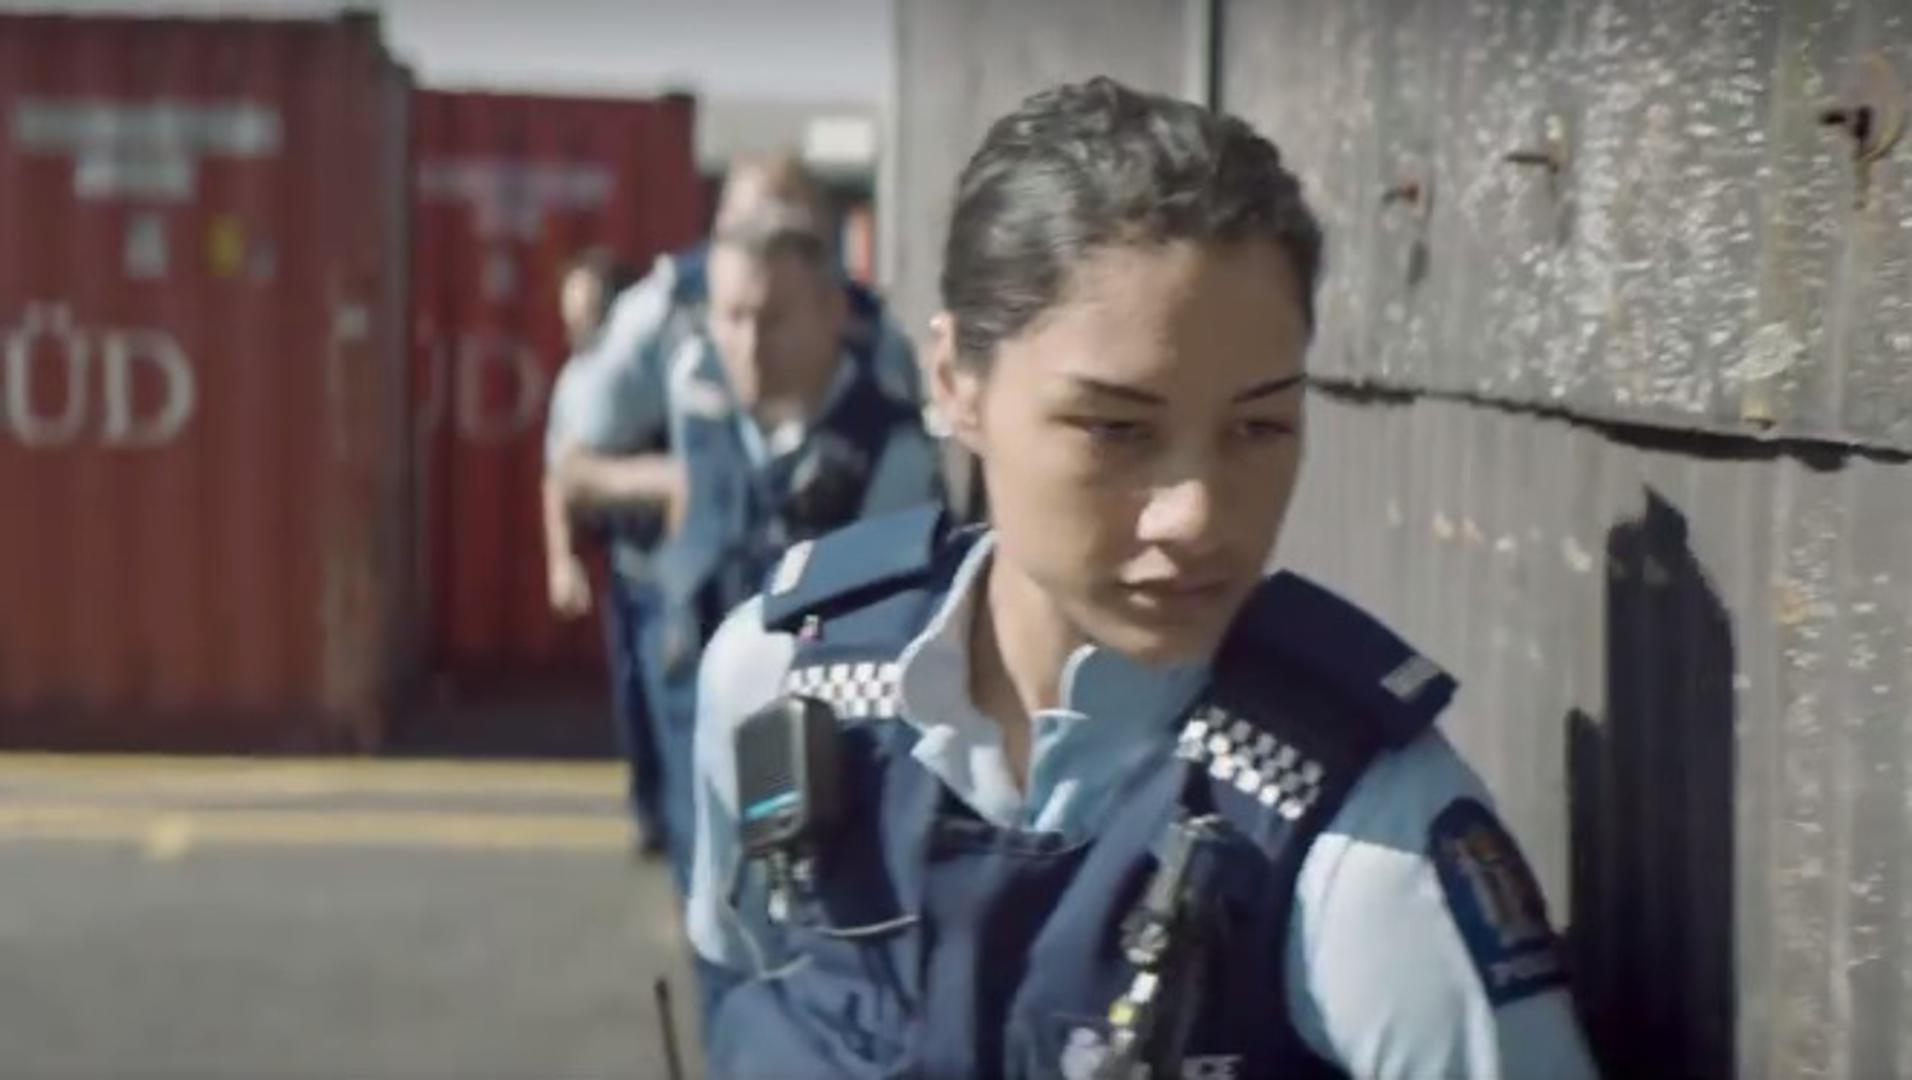 Ako do sada niste razmišljali o radu u policiji, možda vam ovaj video novozelandske policije probudi želju za tim.